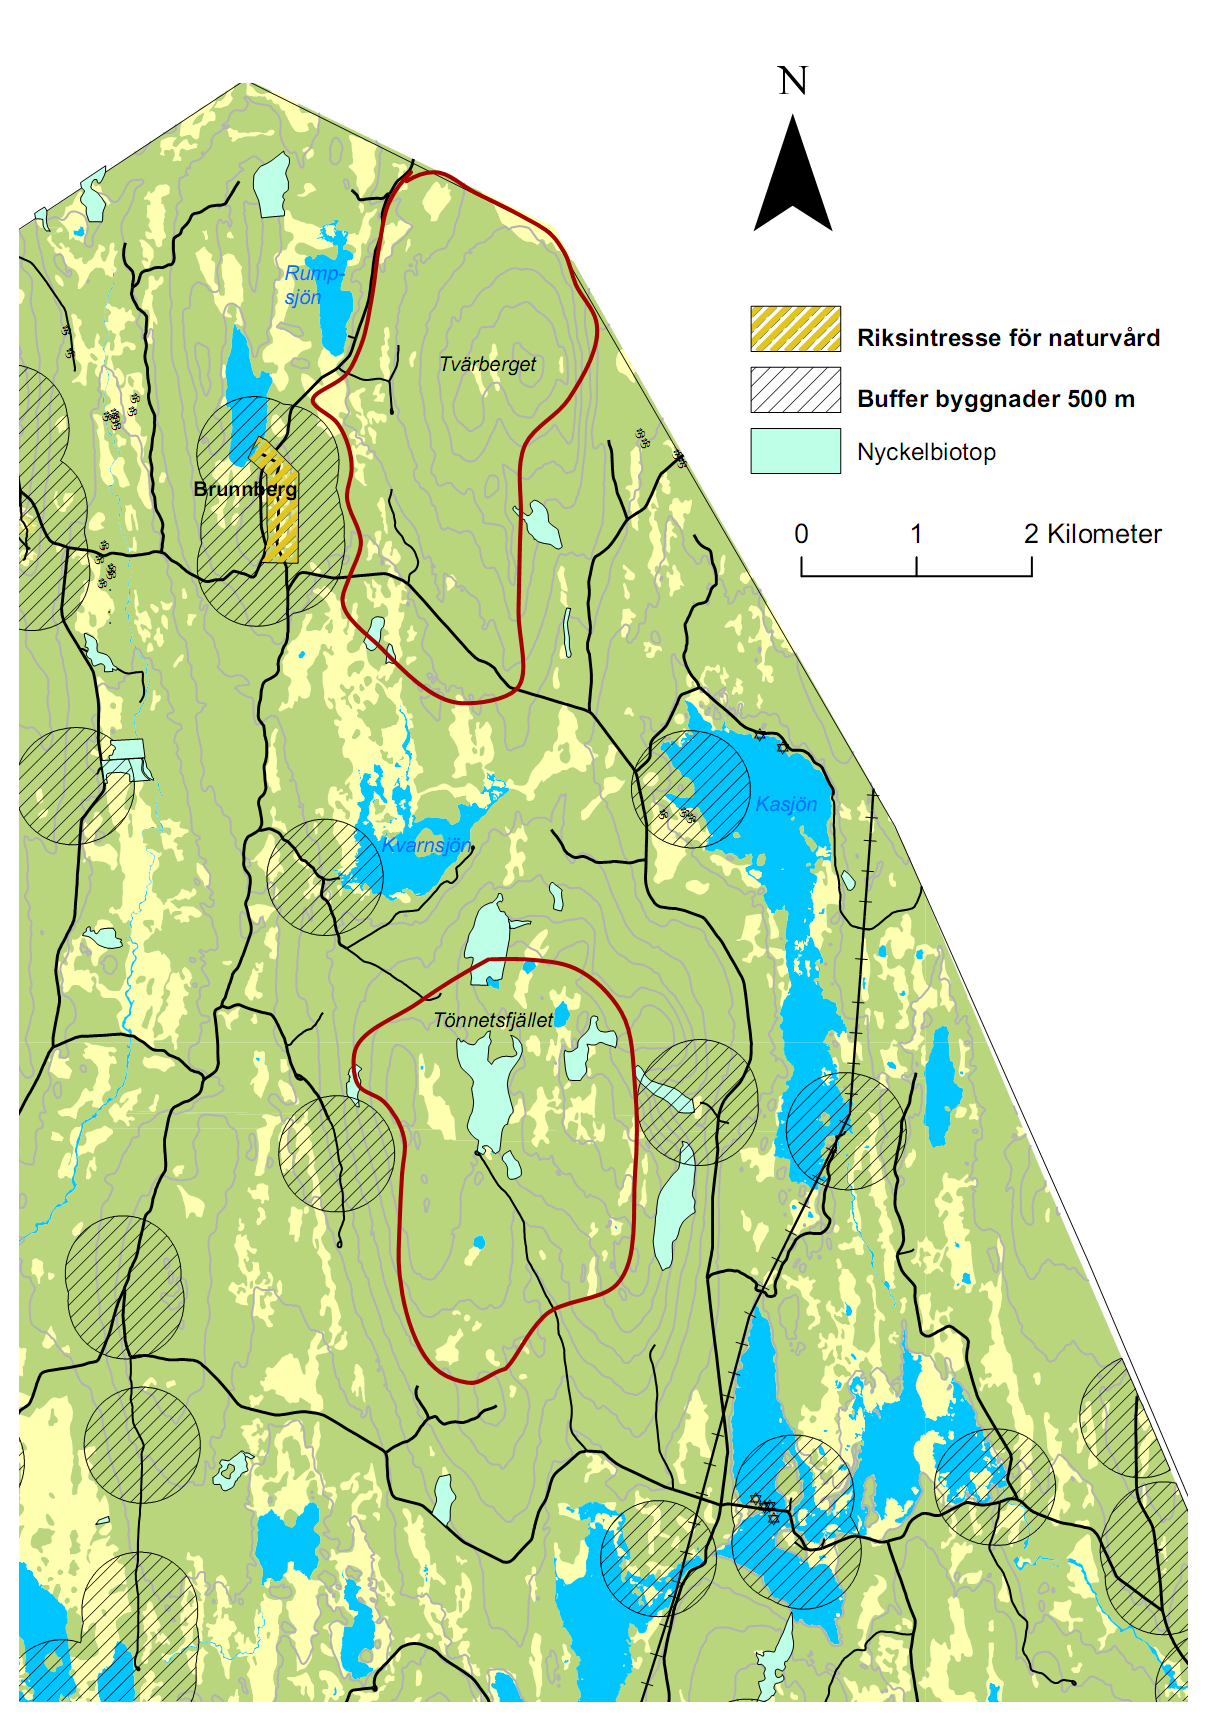 10.1 Område 1 Brunnberg-Tönnetfjället Lokalisering Området ligger i norra delen av kommunen och gränsar i norr mot Dalarna och Malungs kommun. Området består av två berg separerade av en dal.